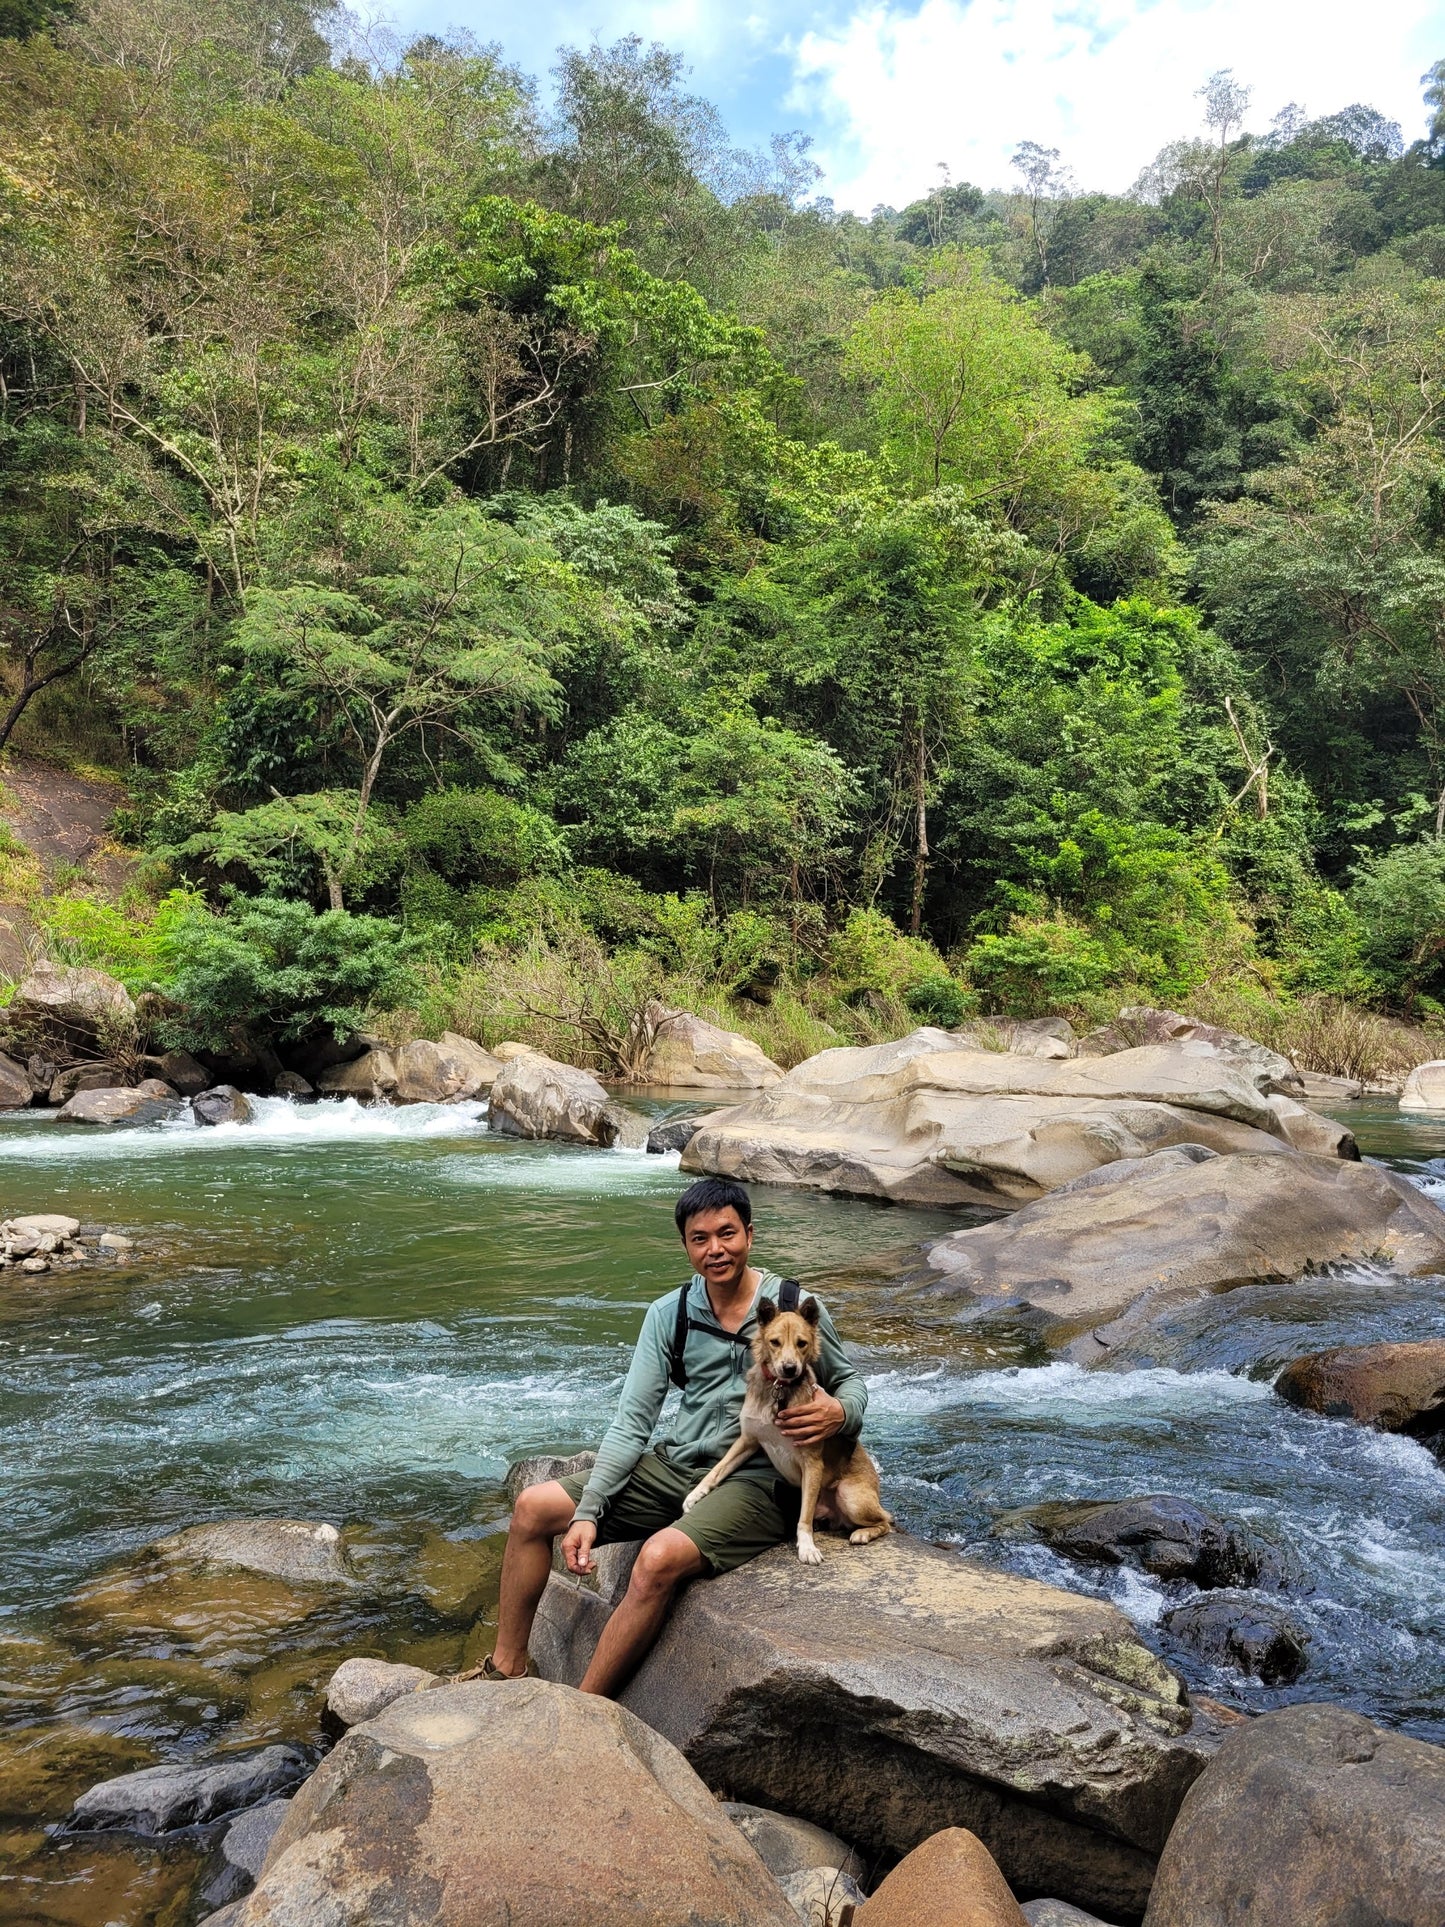 74A: Cuộc phiêu lưu Madagui: Khám phá khu rừng bí ẩn